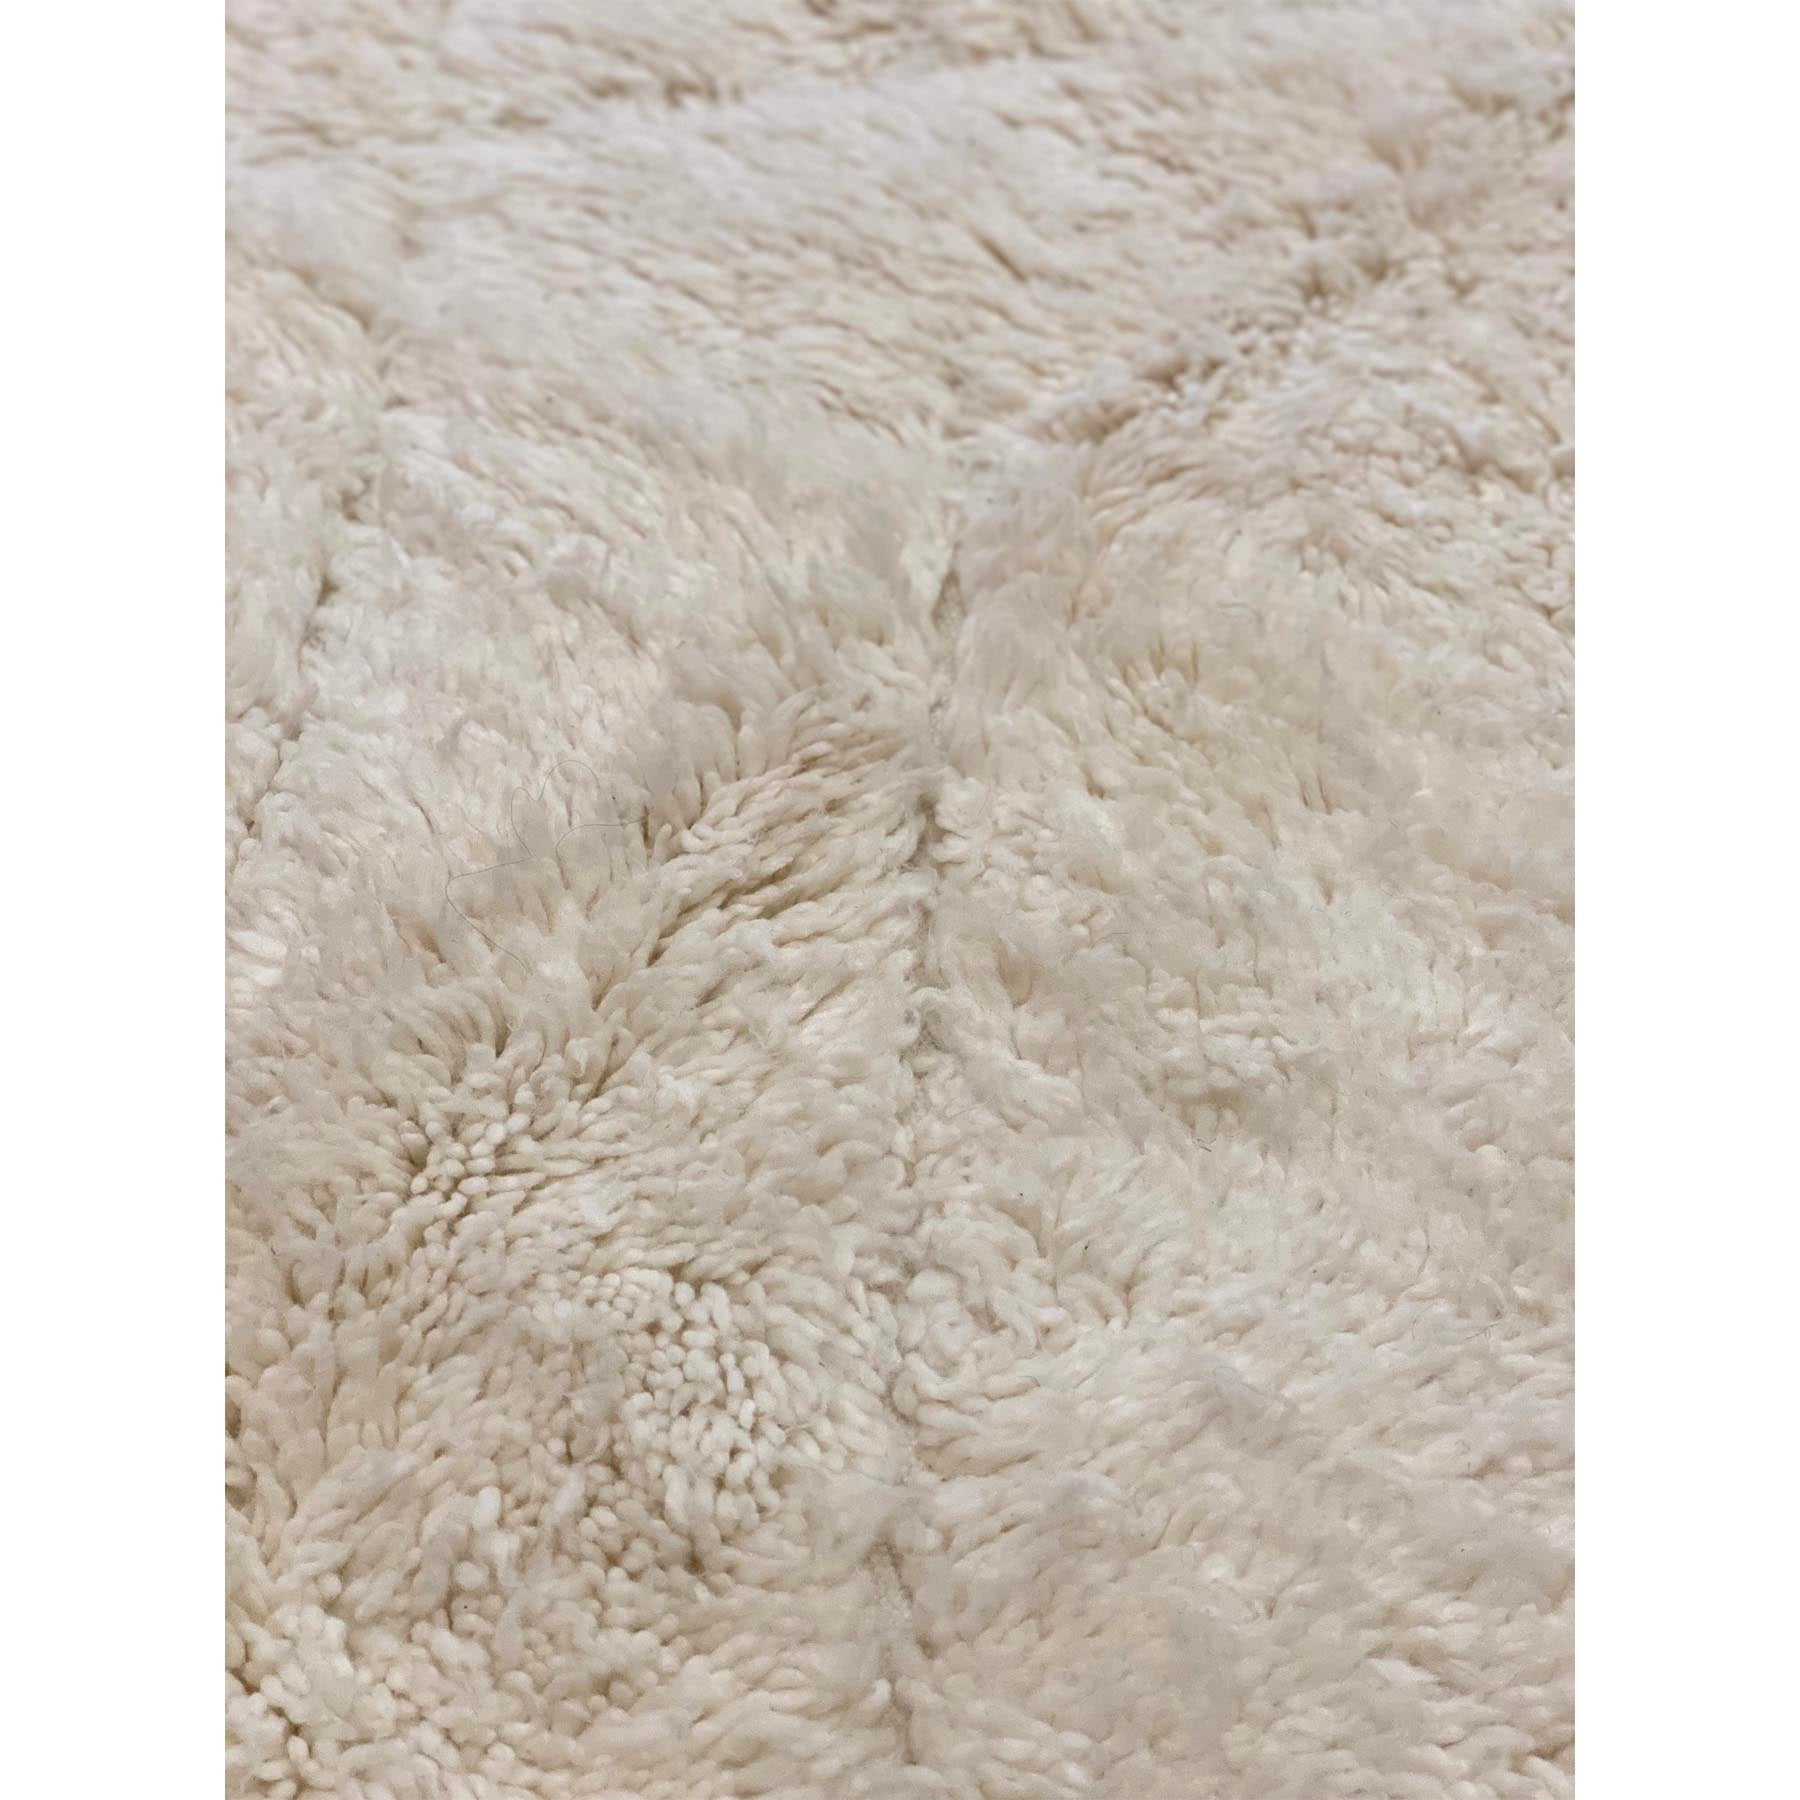 Rare white Beni Mrirt Moroccan pile rug - Kantara | Moroccan Rugs